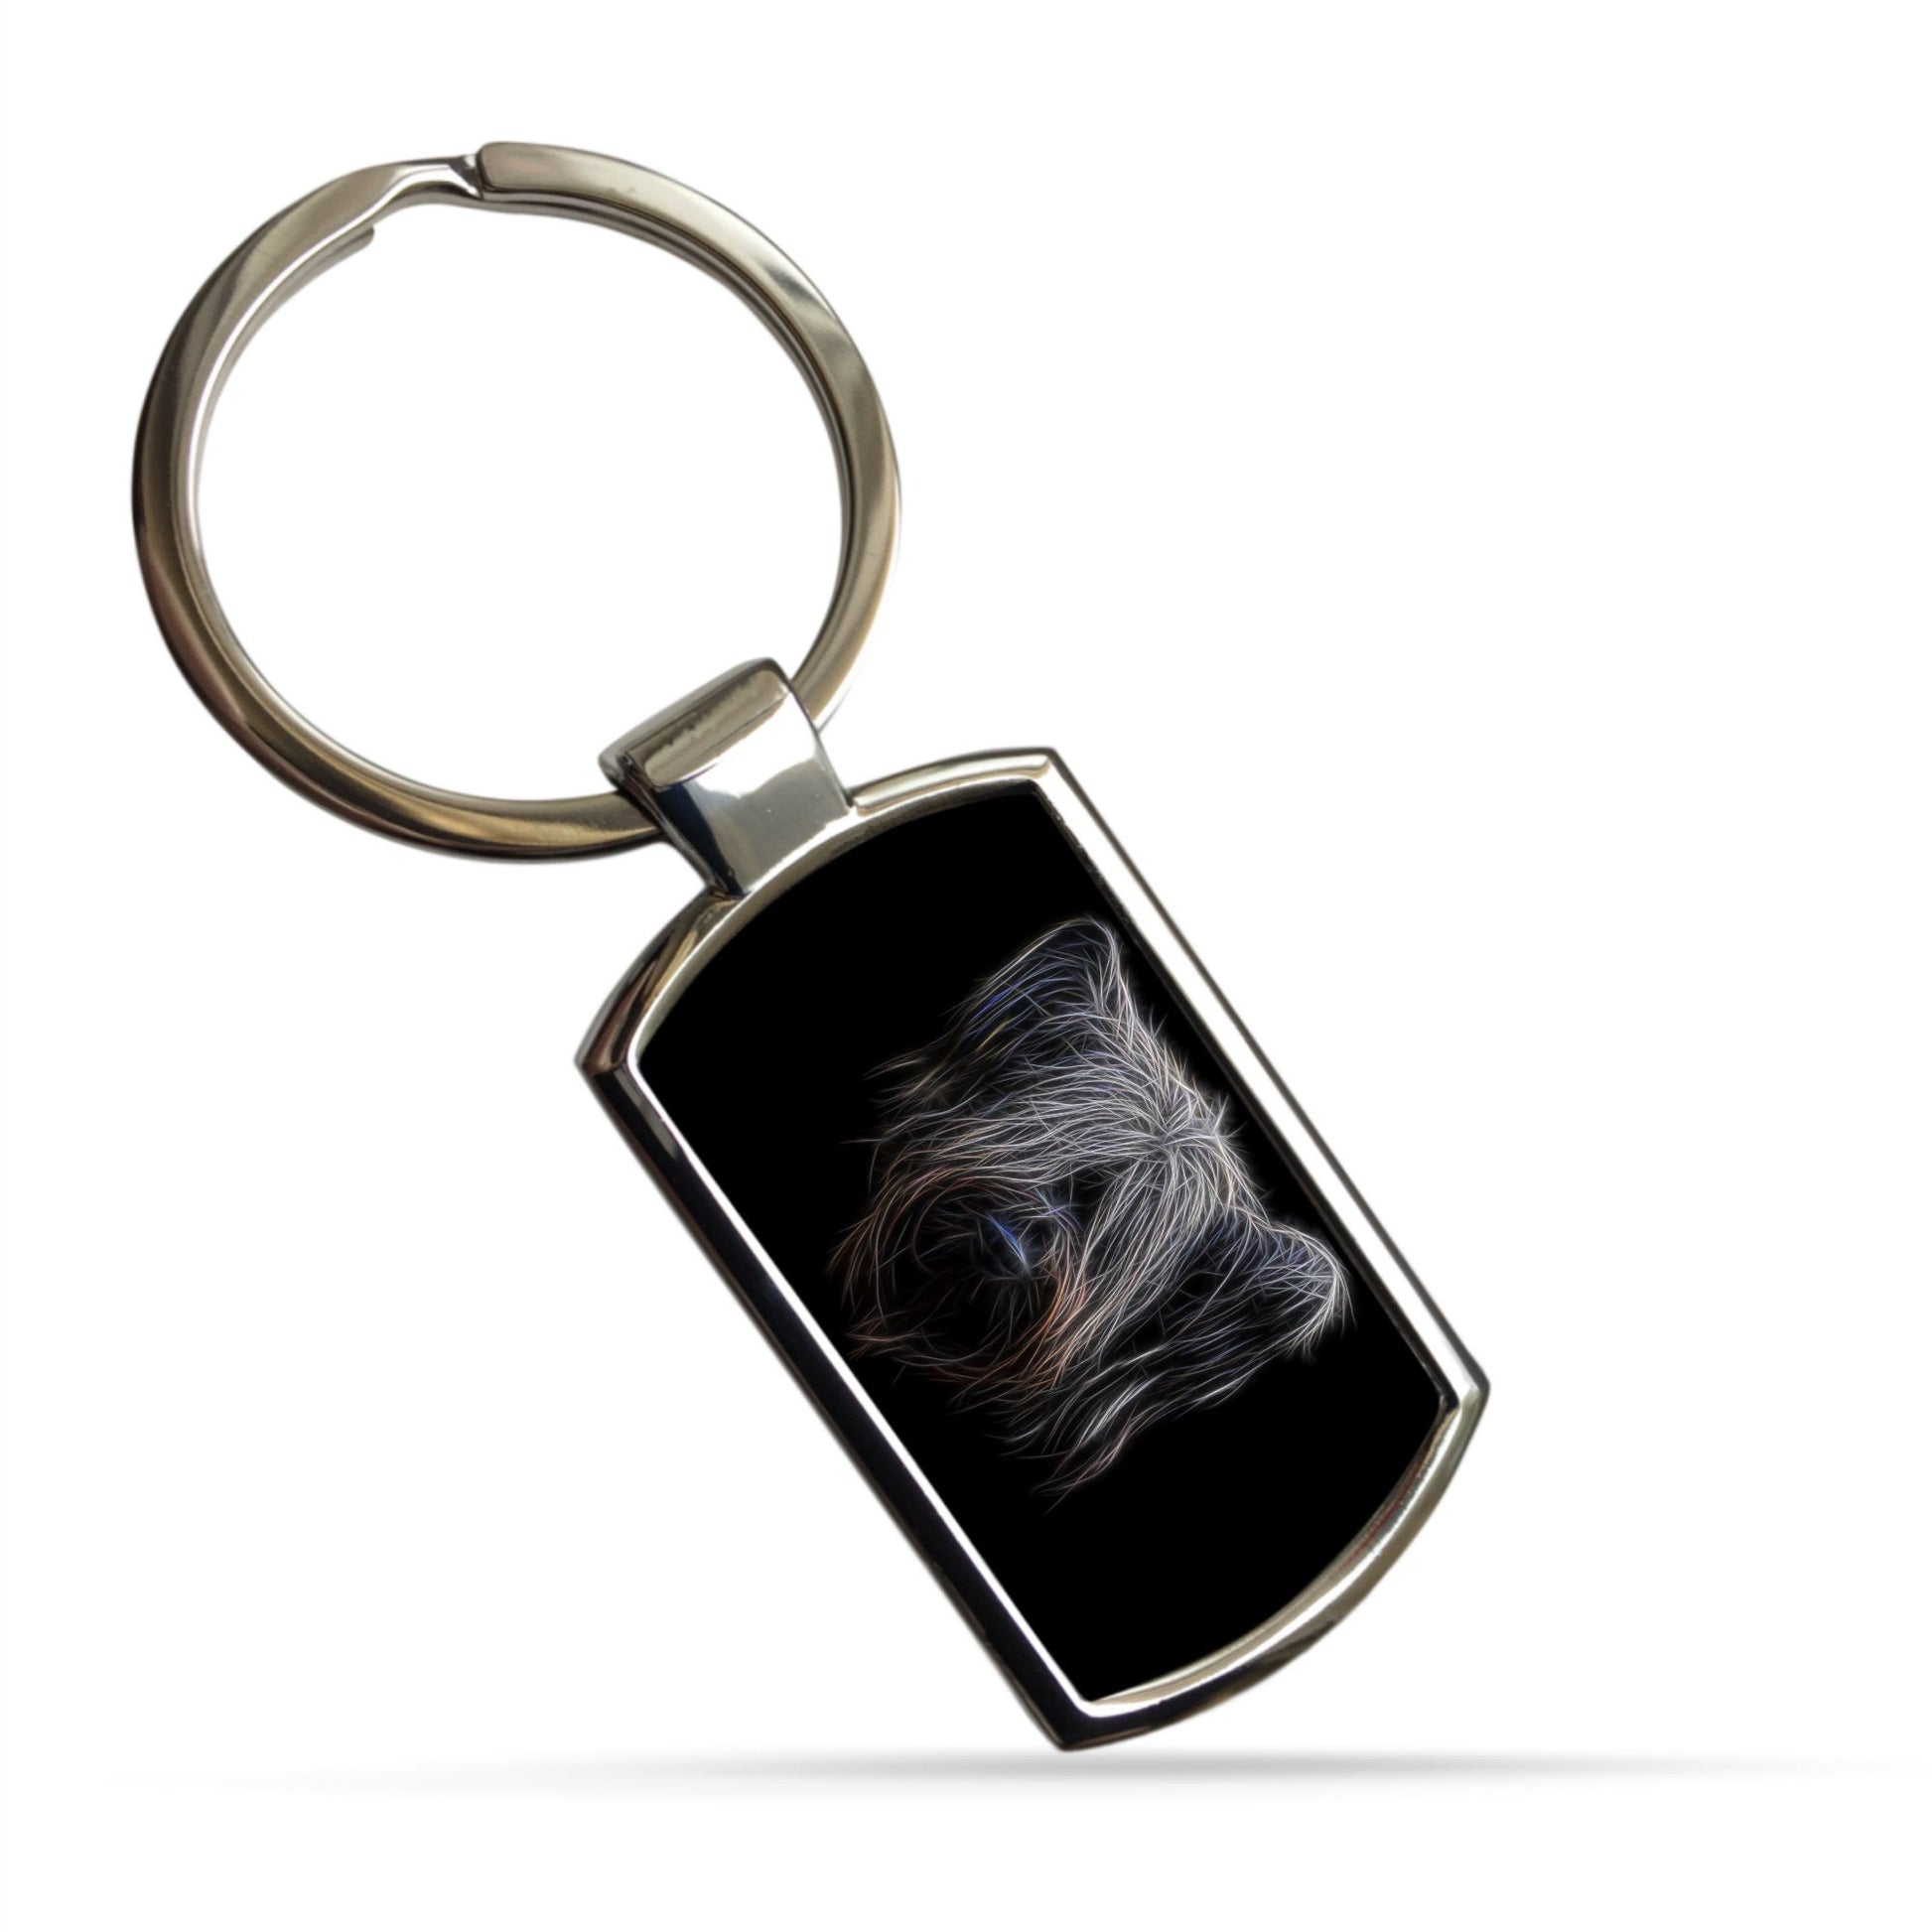 Skye Terrier Keychain with Stunning Fractal Art Design. Skye Terrier Dog Gift